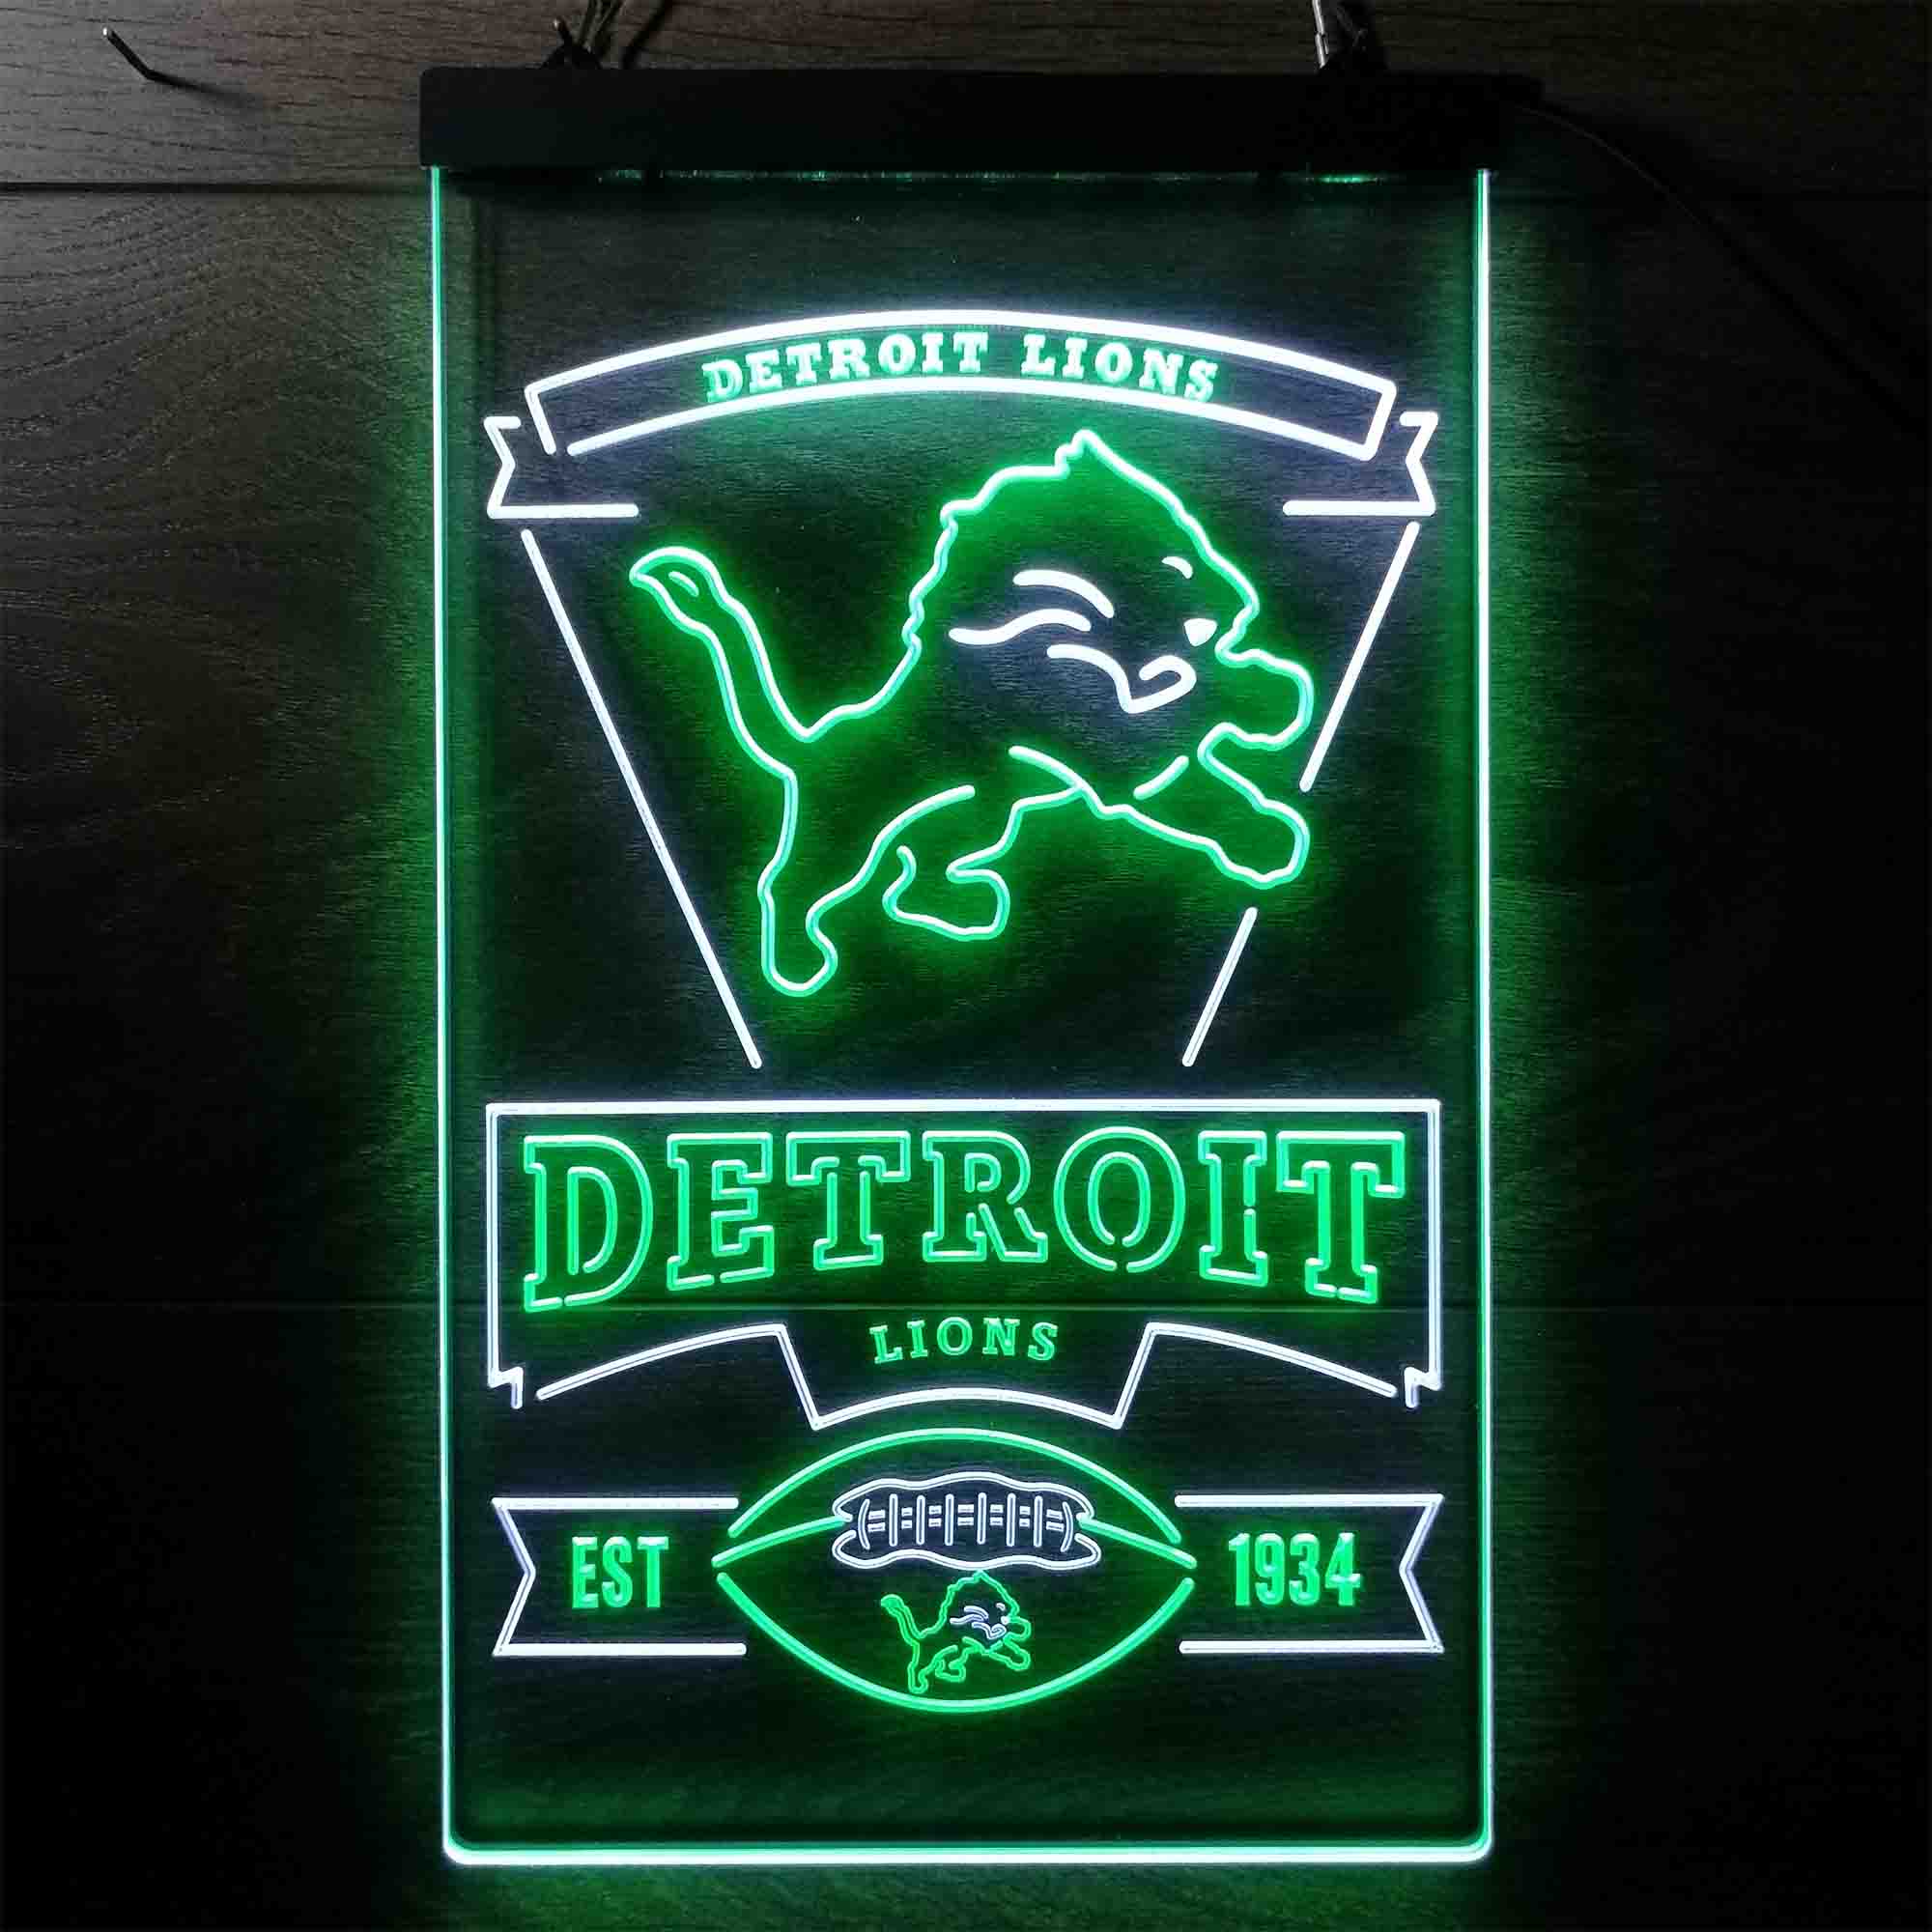 Detroit Lions Est. 1934 Neon-Like LED Sign